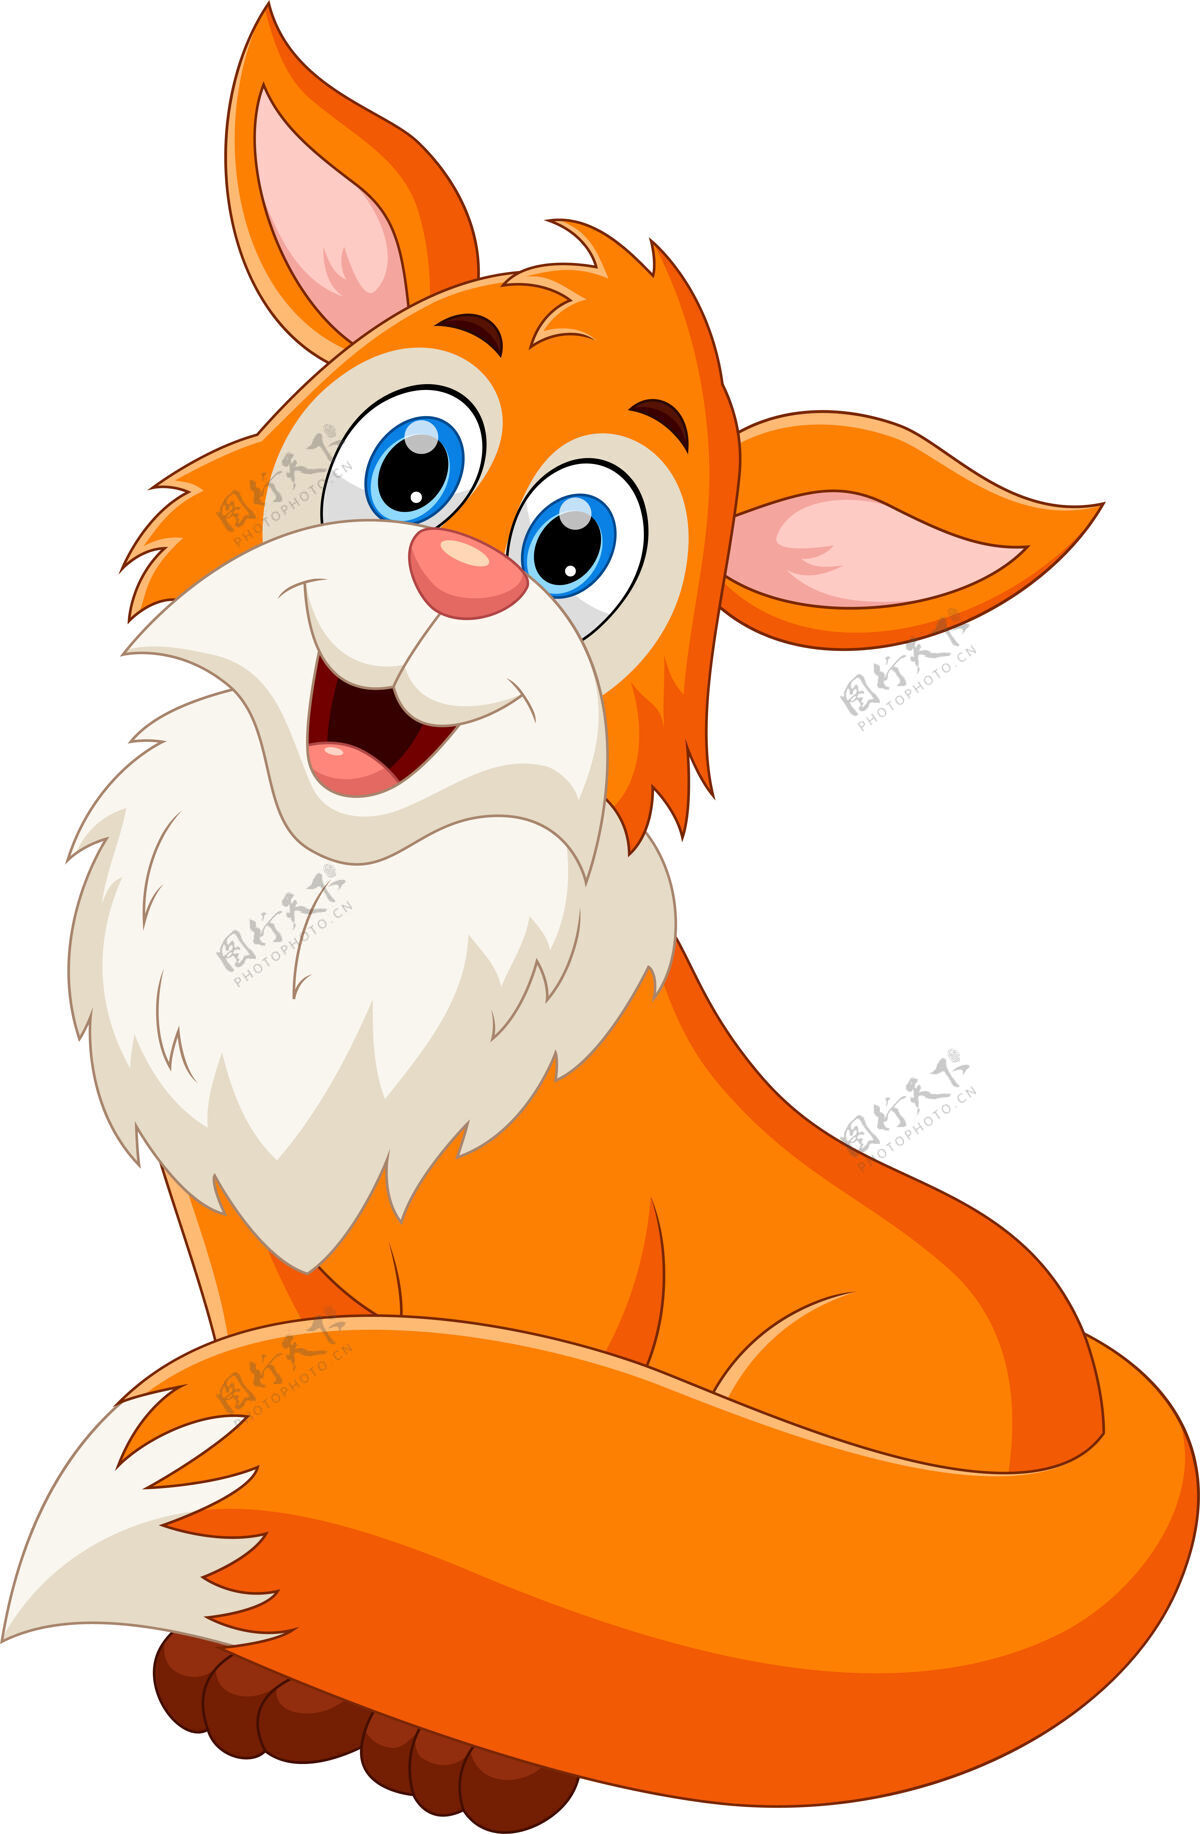 平面设计卡通可爱的狐狸摆姿势微笑狐狸卡通人物动物